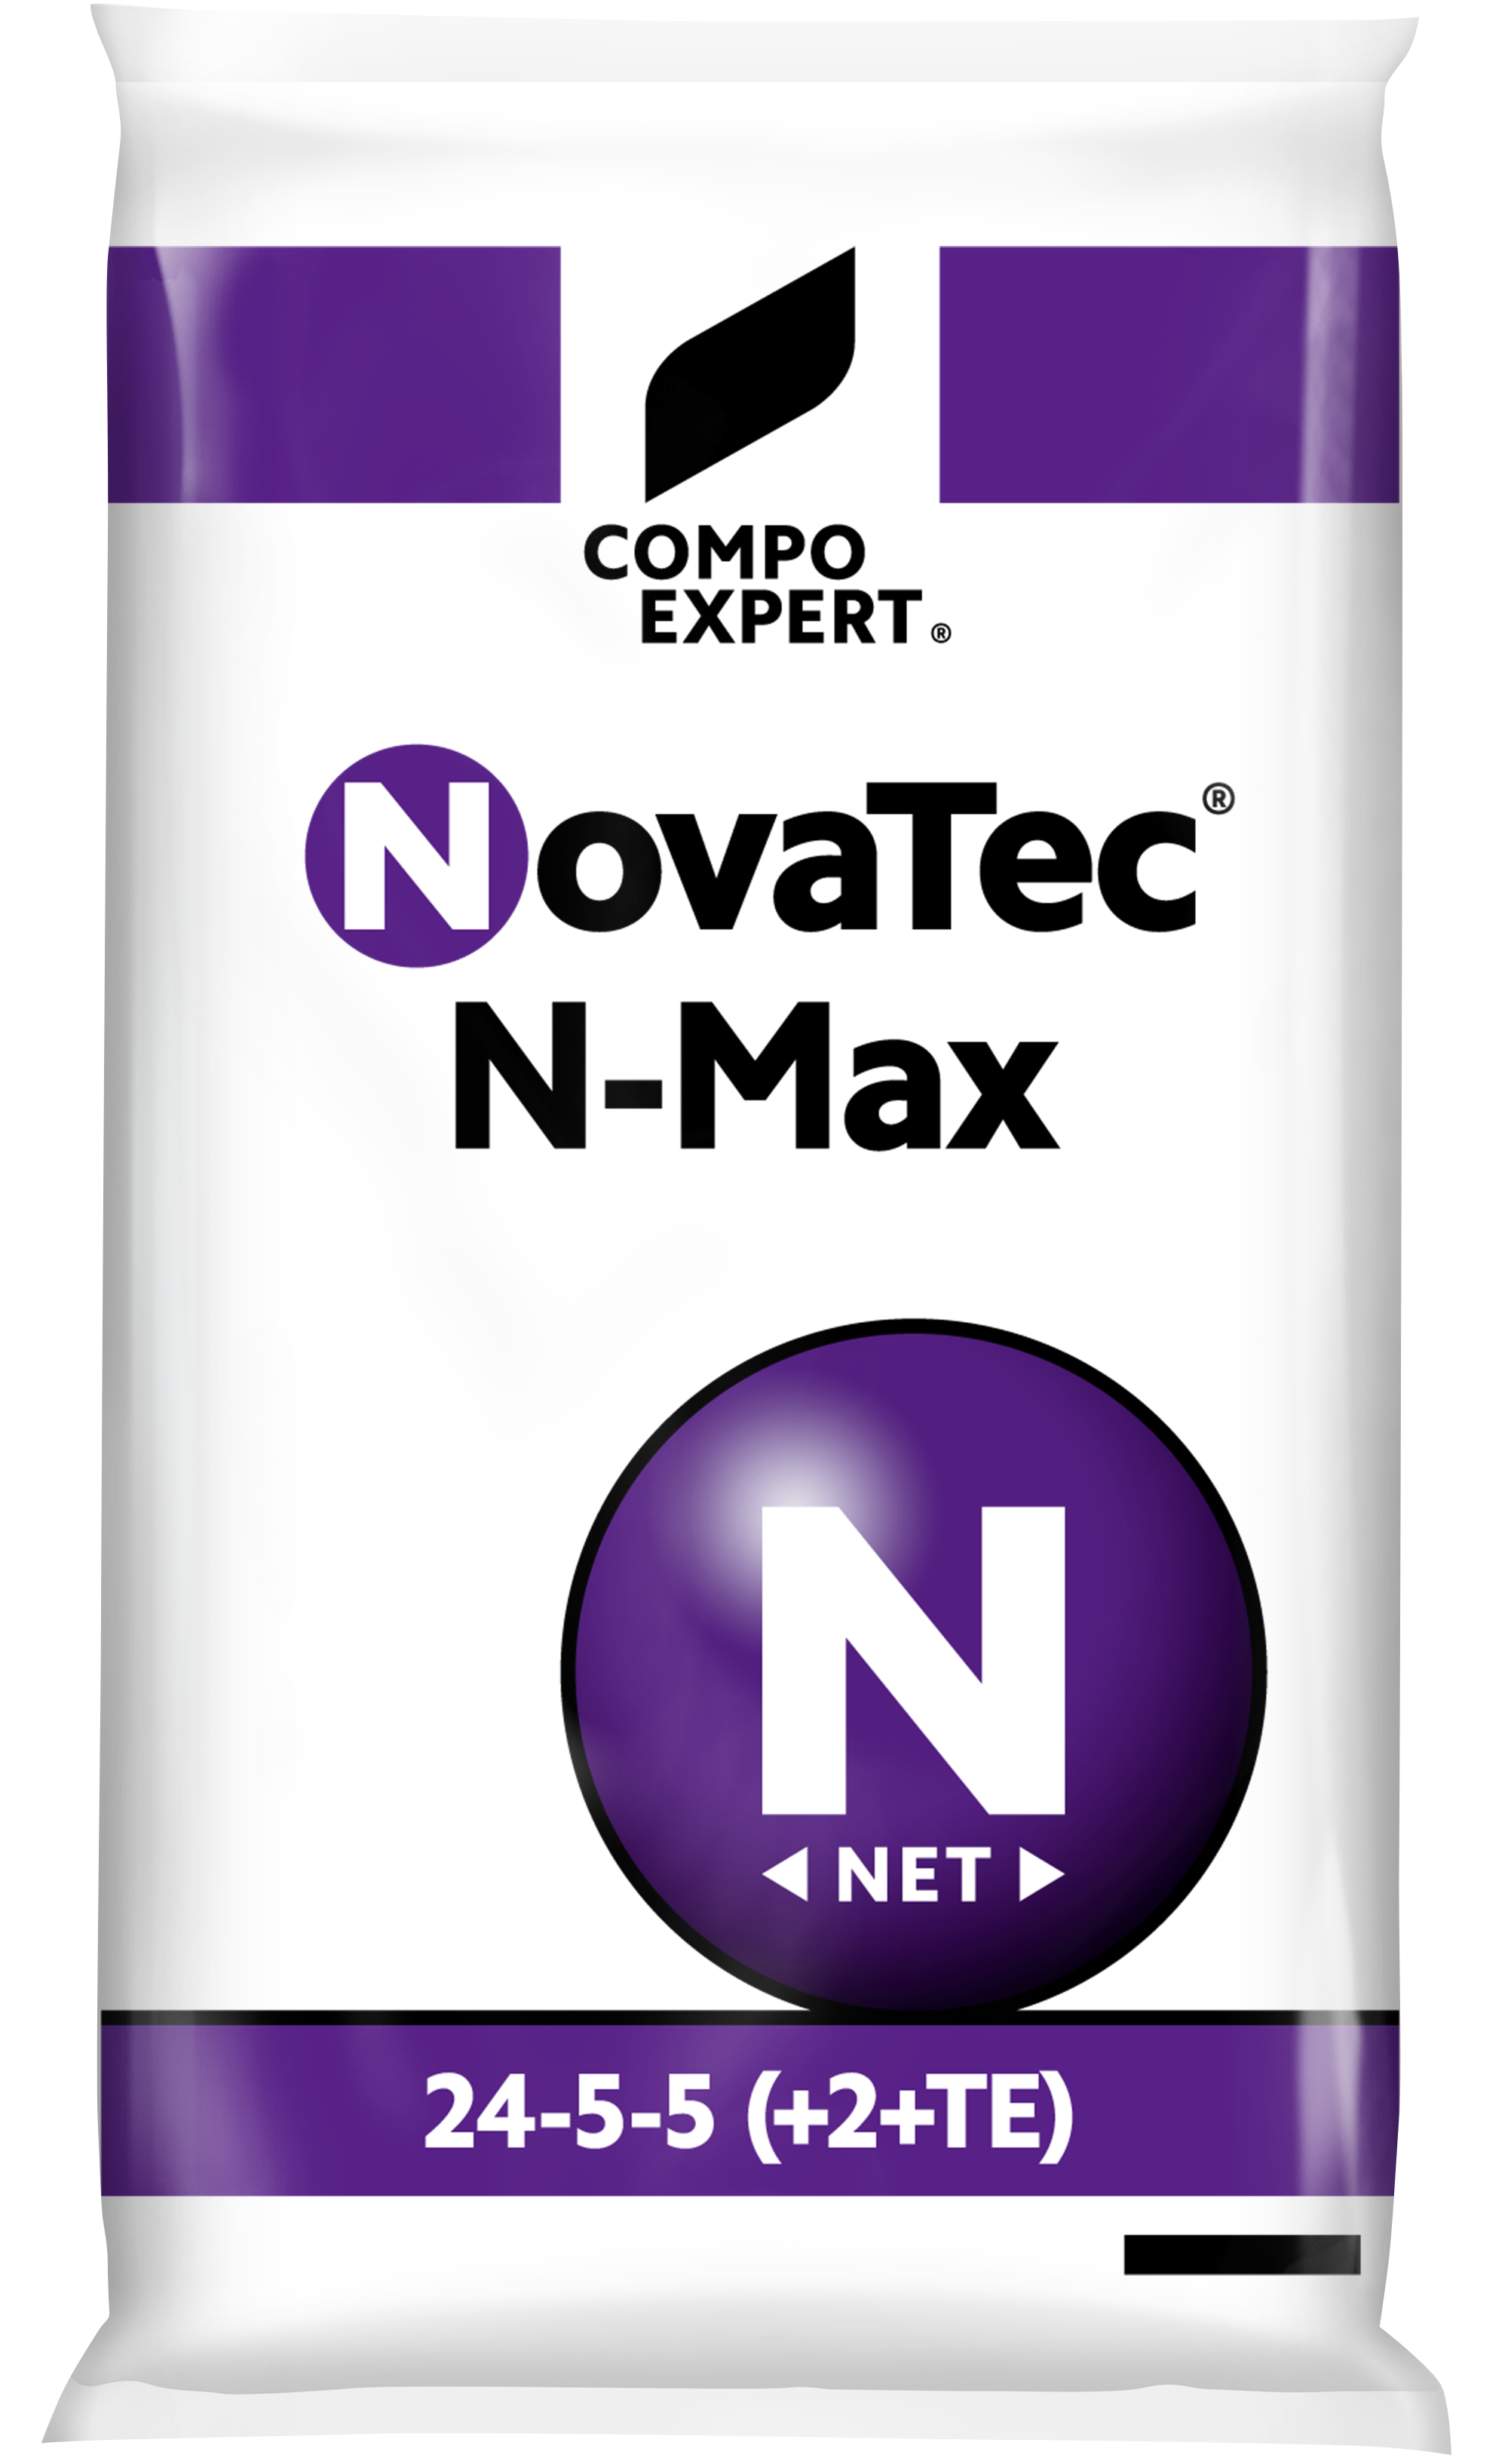 Compo-Expert NovaTec N-Max 25kg (Granular fertiliser)